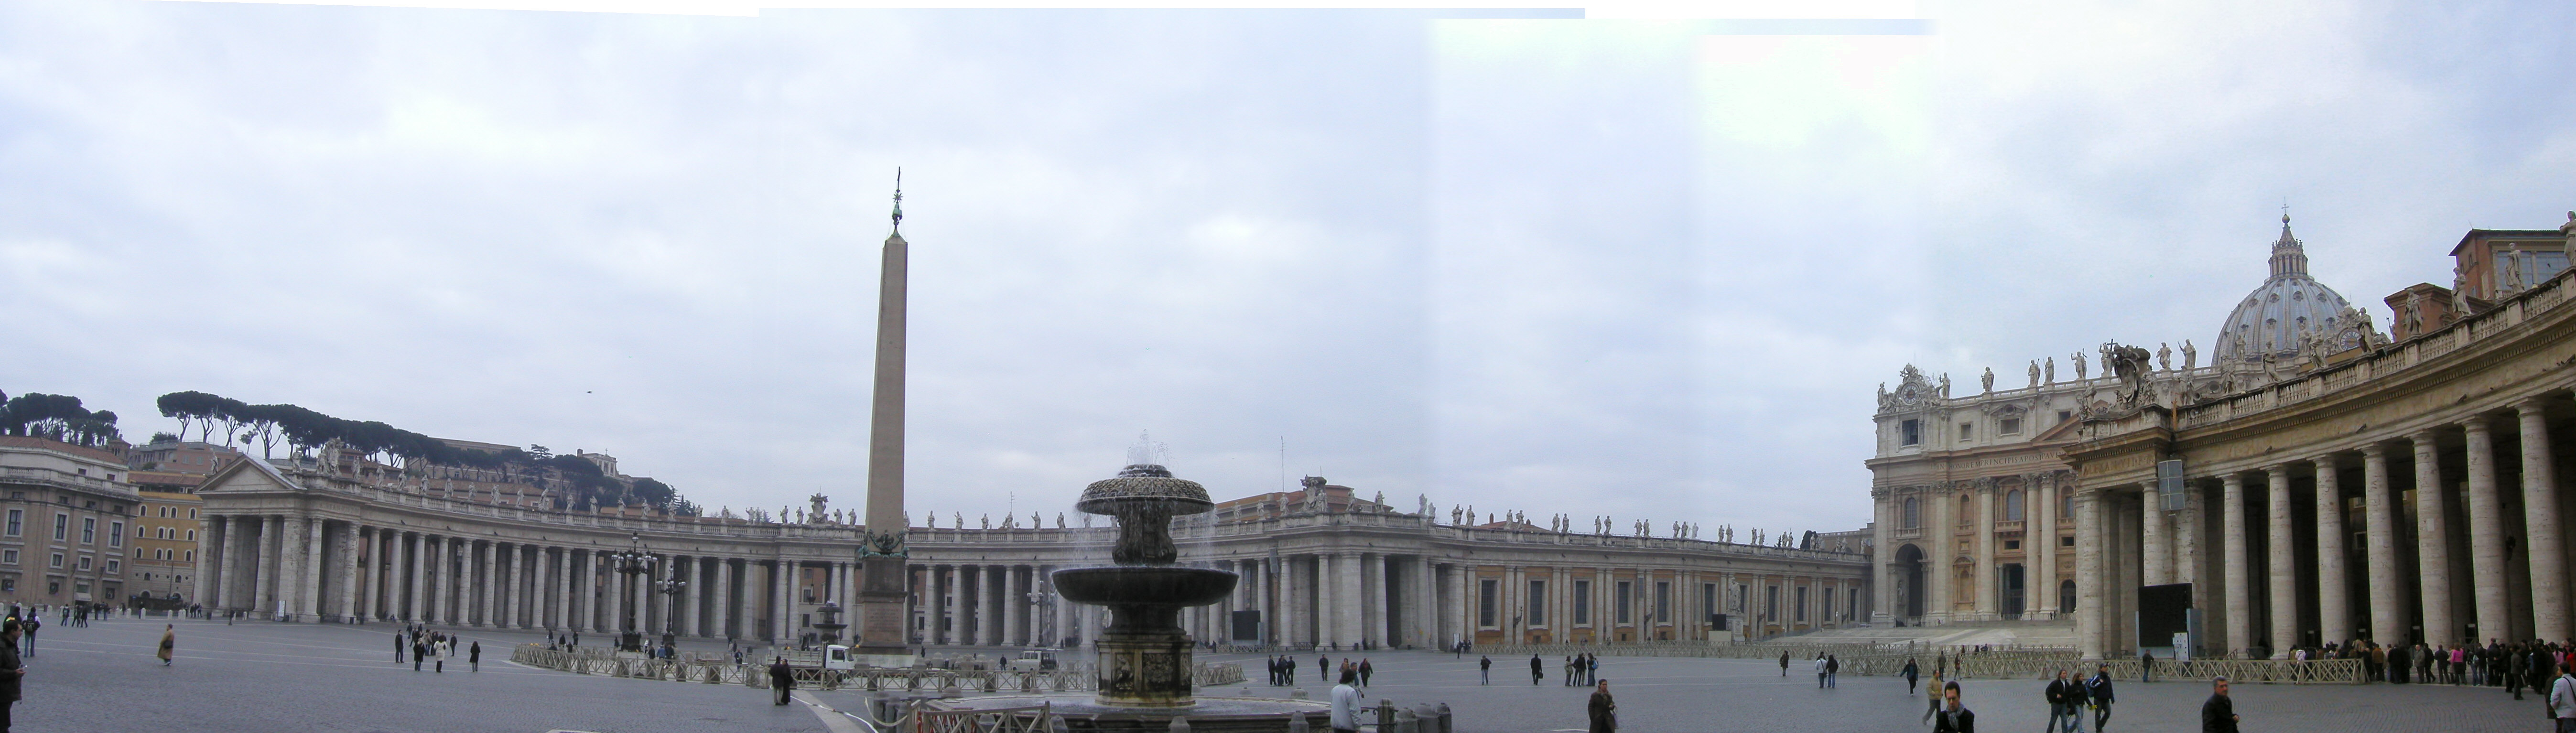 Panorama of Piazza San Pietro